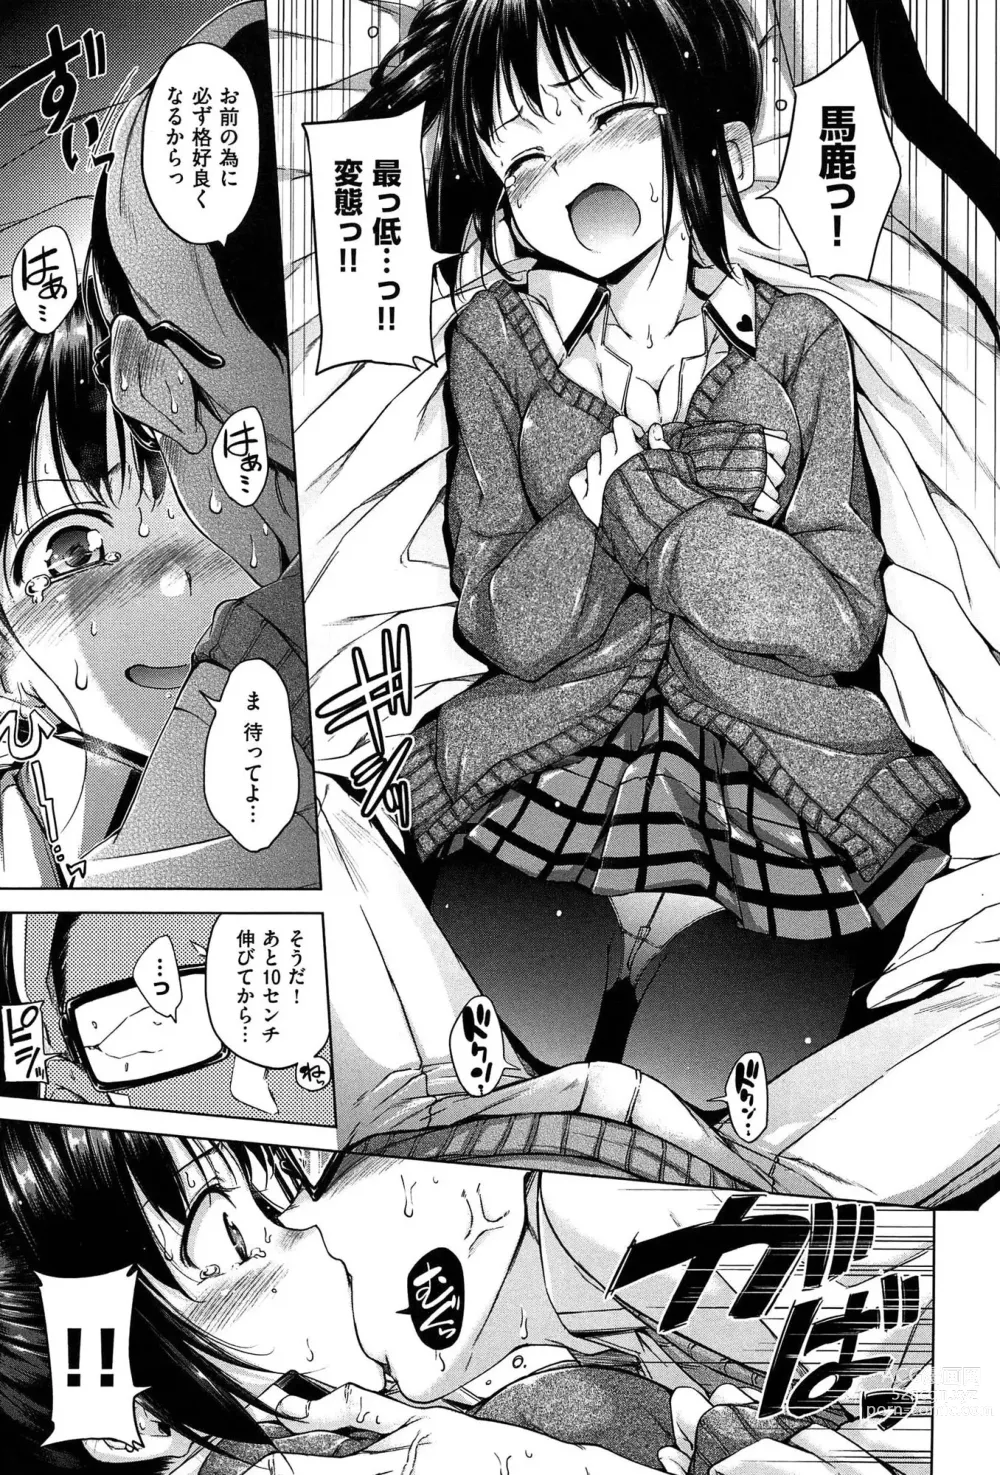 Page 33 of manga Kira Kira